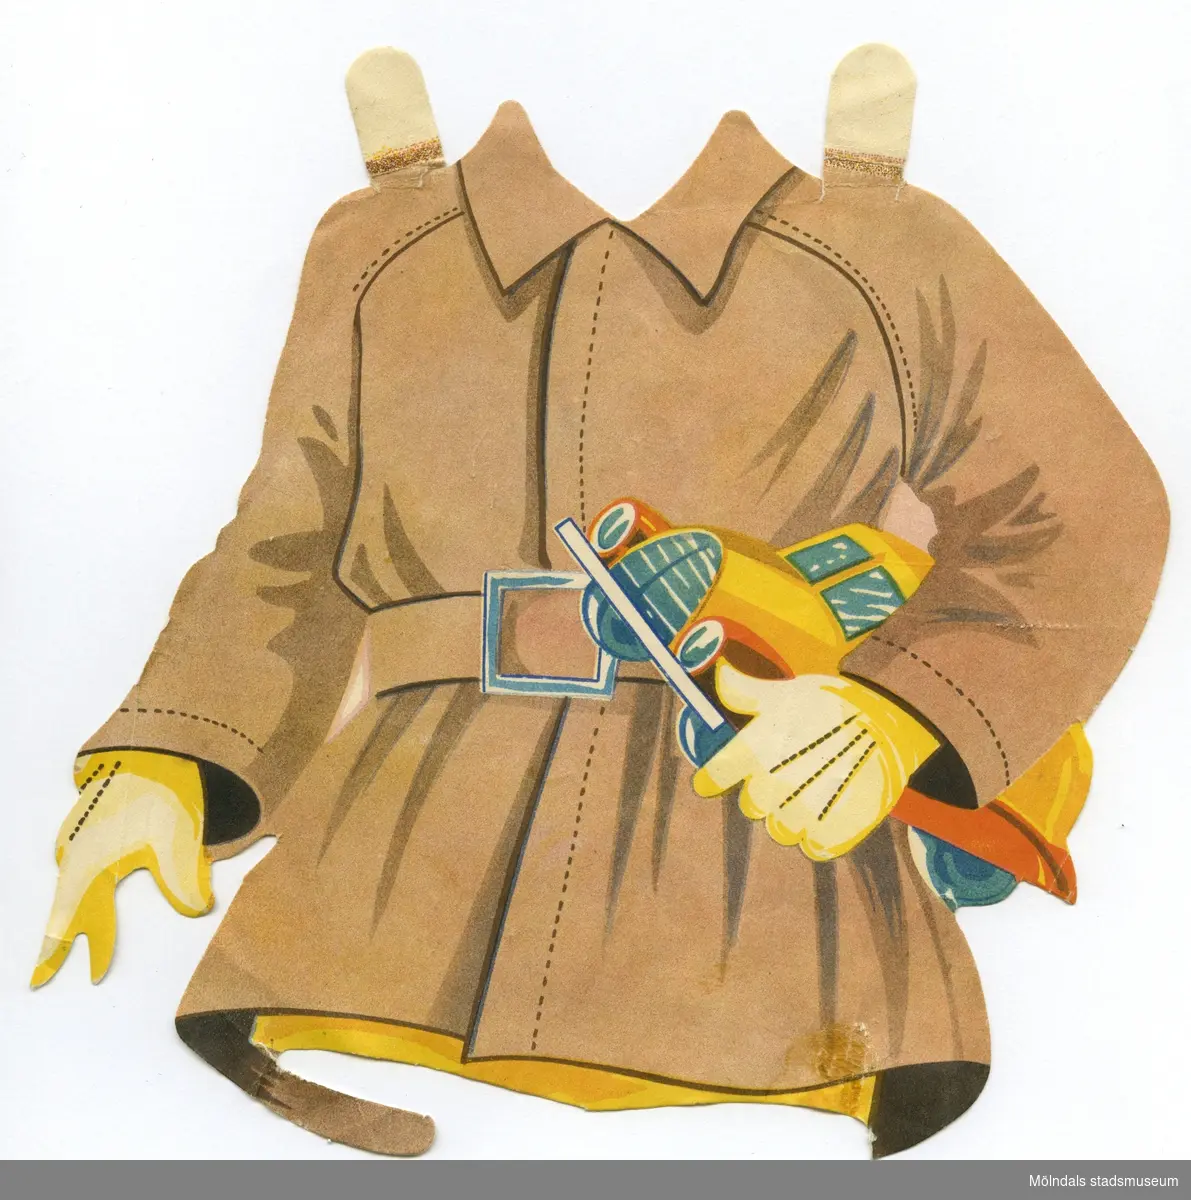 Plagg till större pappersdocka, från 1950-talet. Kläderna är märkta "Pelle" på baksidan - dockans namn. Själva dockan saknas dock. Garderoben består av pojkkläder; kortbyxor med skjorta för lek och skola, samt en brun rock. 